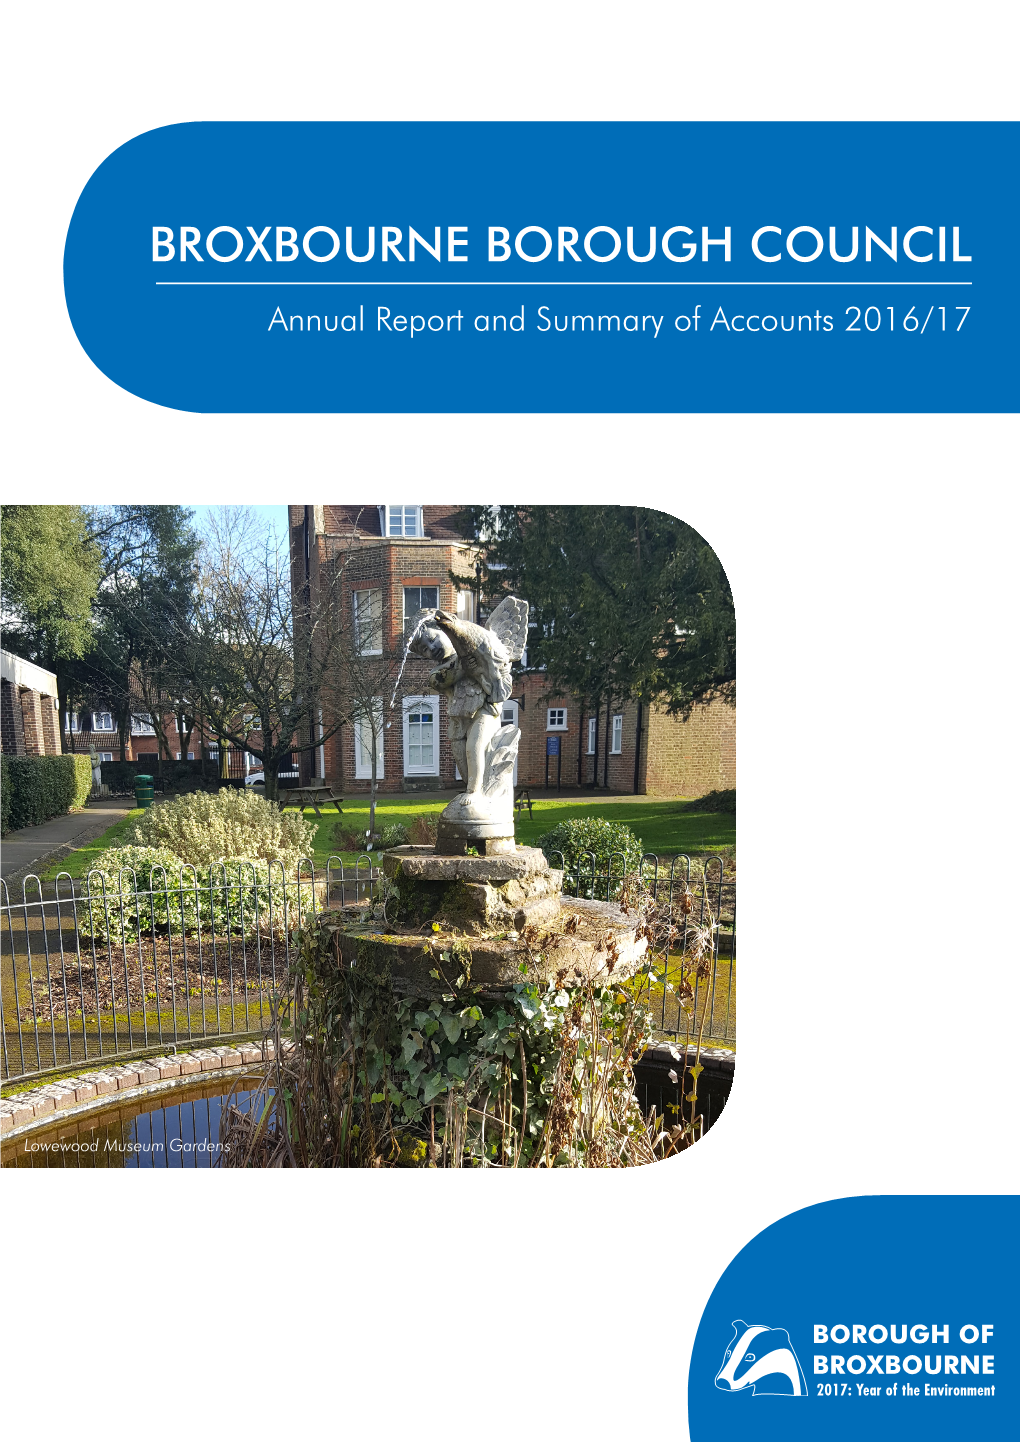 Broxbourne Borough Council's Annual Report 2016/17